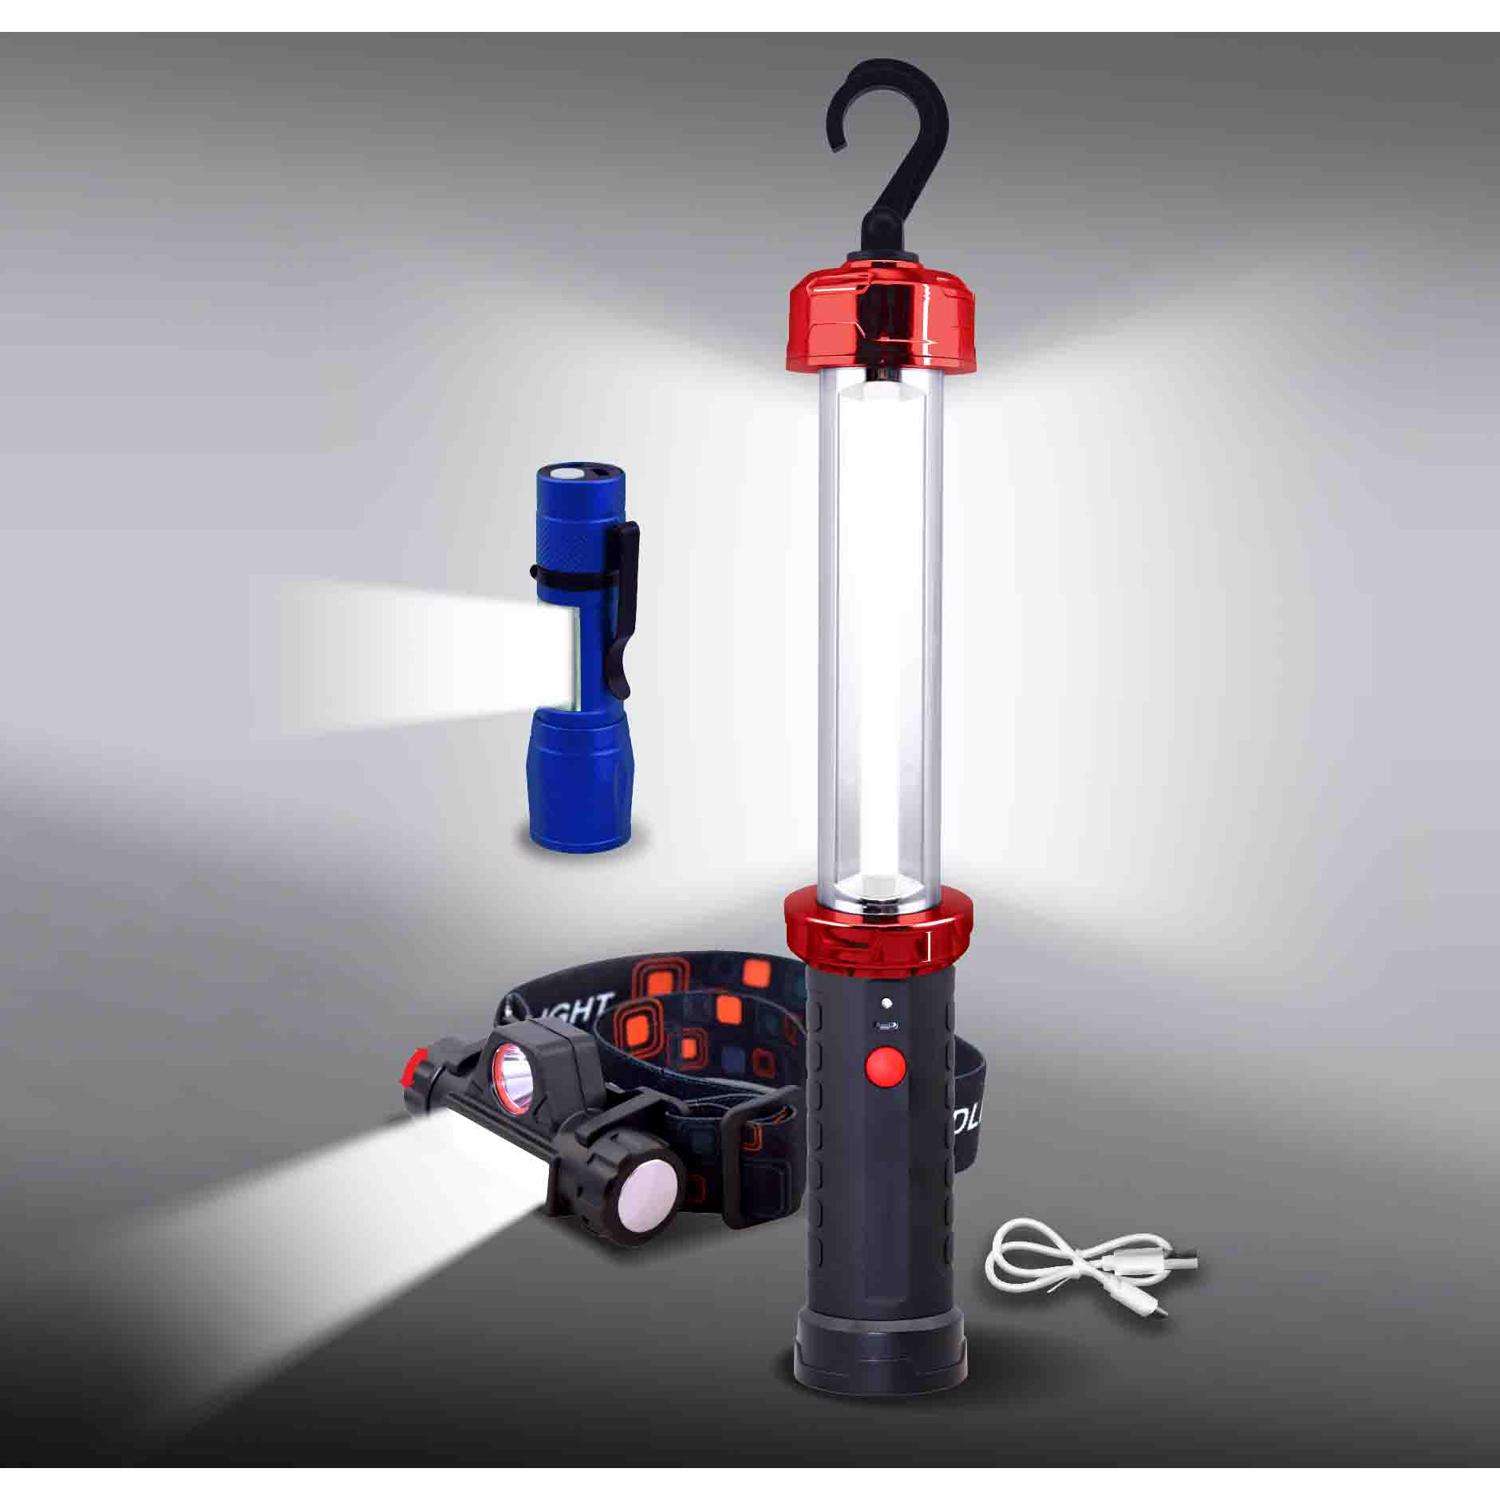 Shawshank LEDz - All Products - 12 LED Camping Lantern